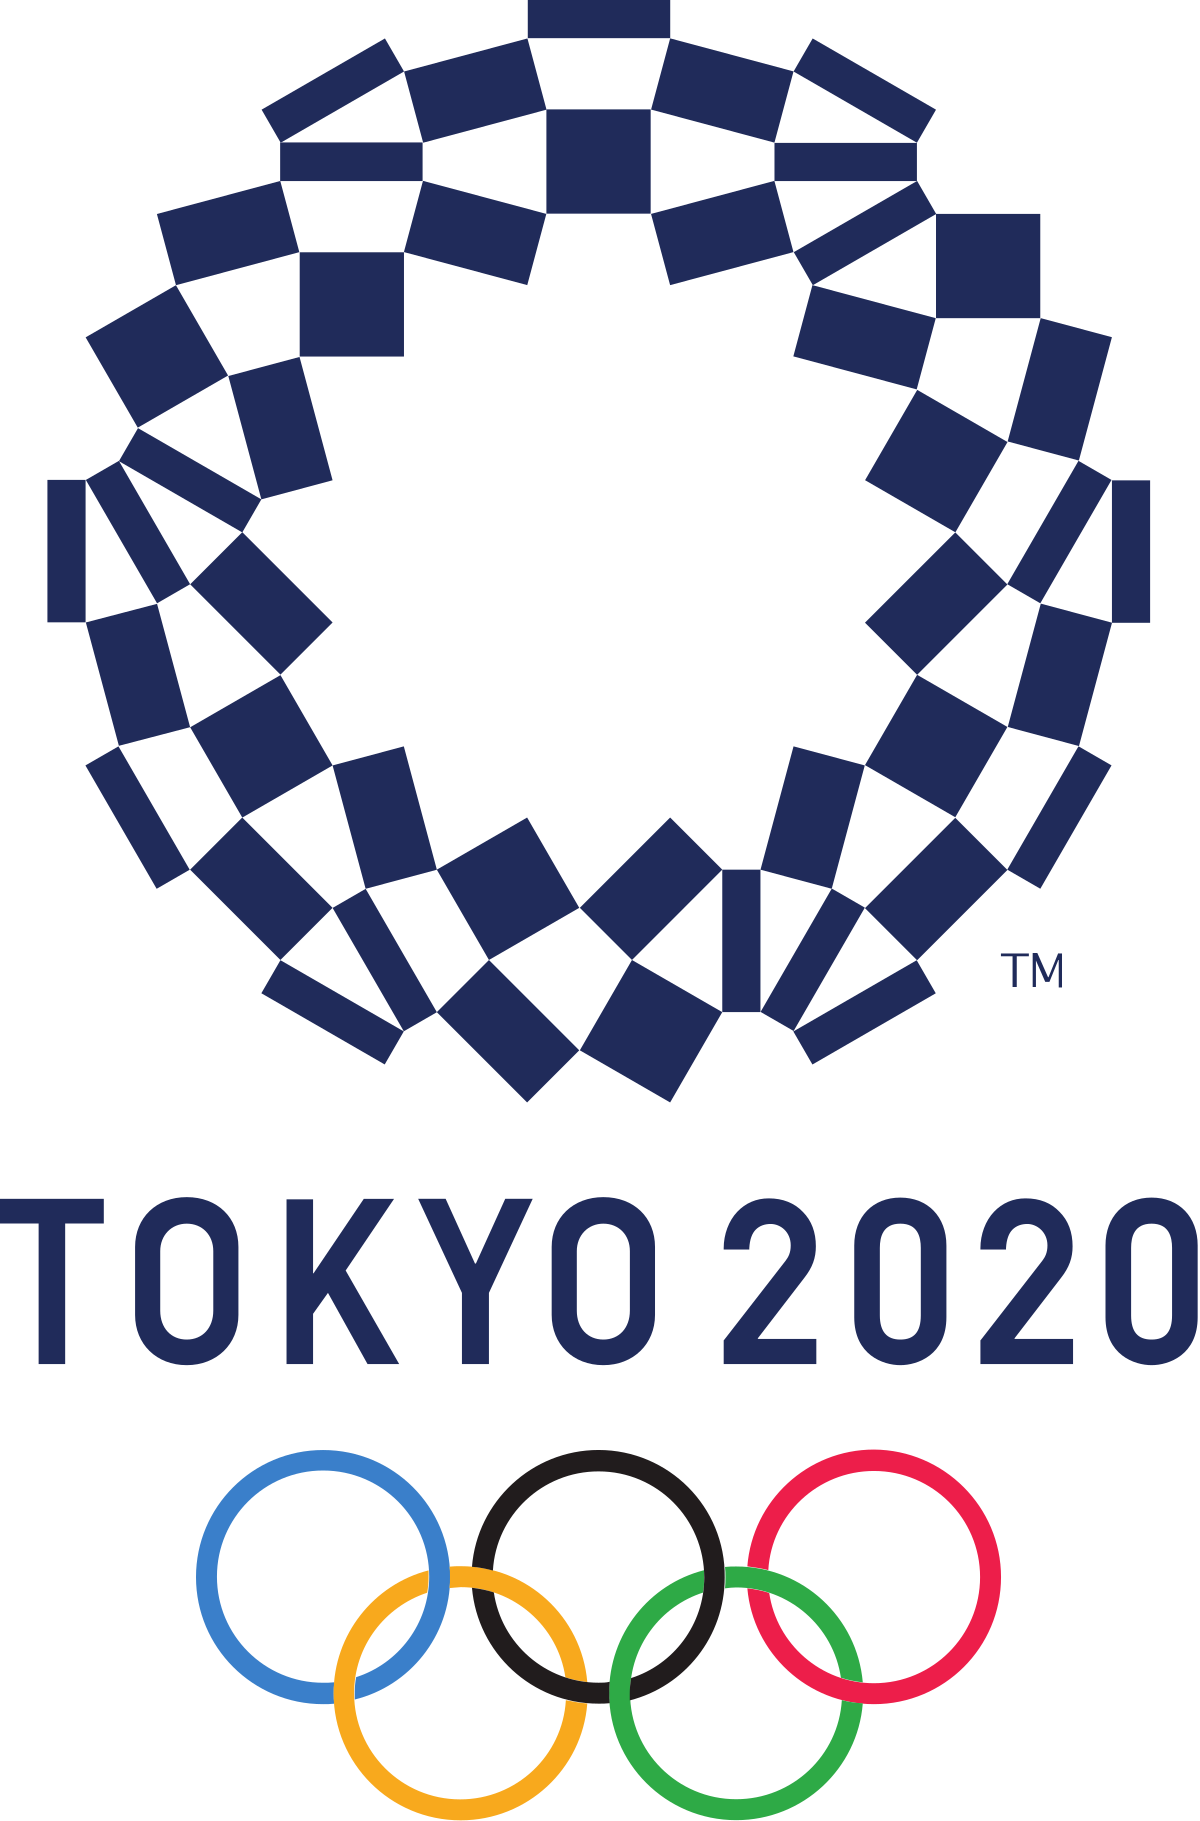 أولمبياد طوكيو